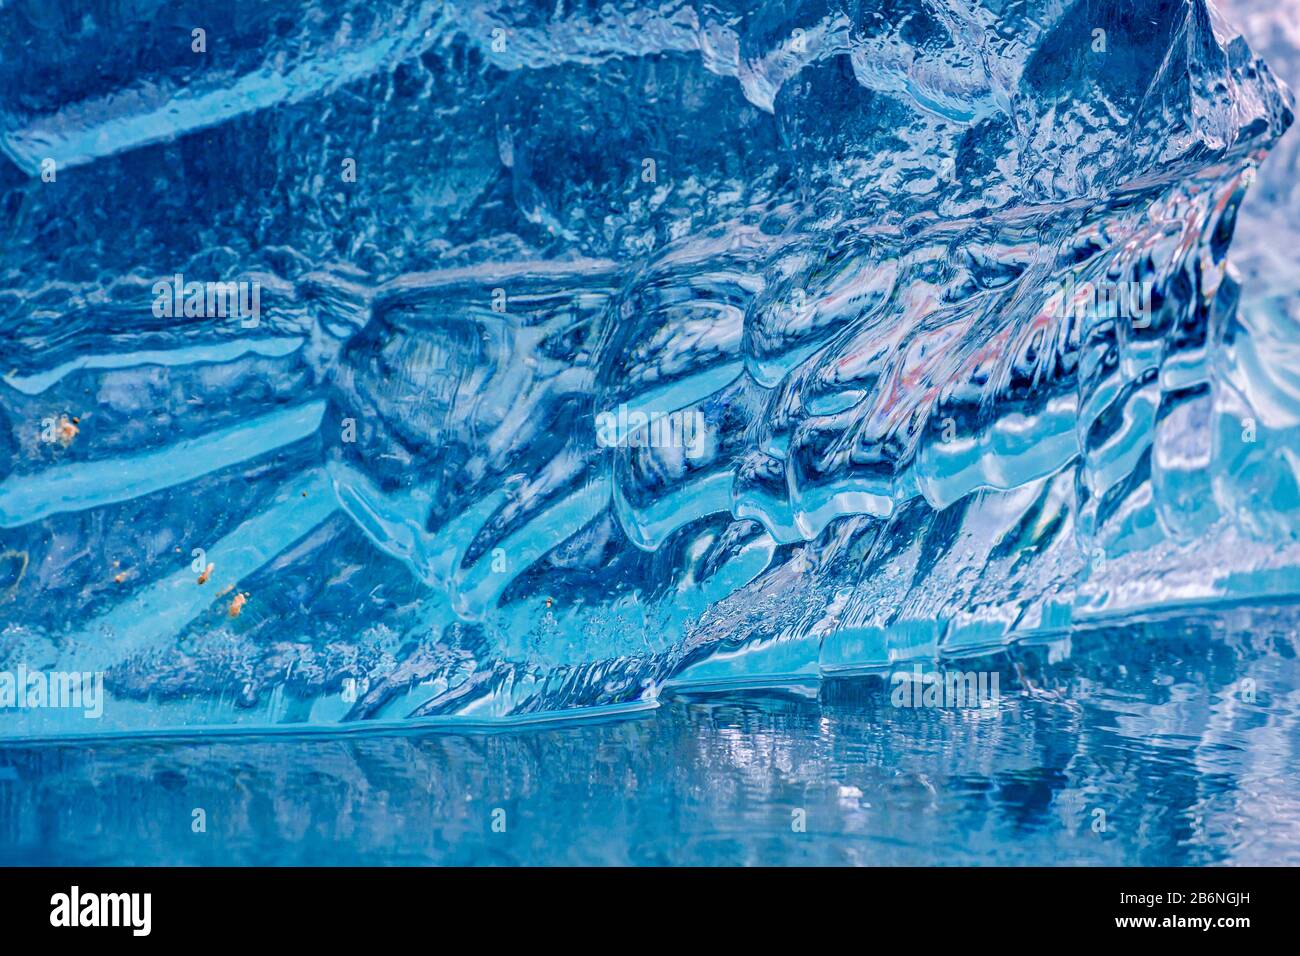 Abstraktes Muster in schmelzender Eisscholle/Eisberg, das Textur durch Schmelzwasser/Schmelzwasser zeigt Stockfoto